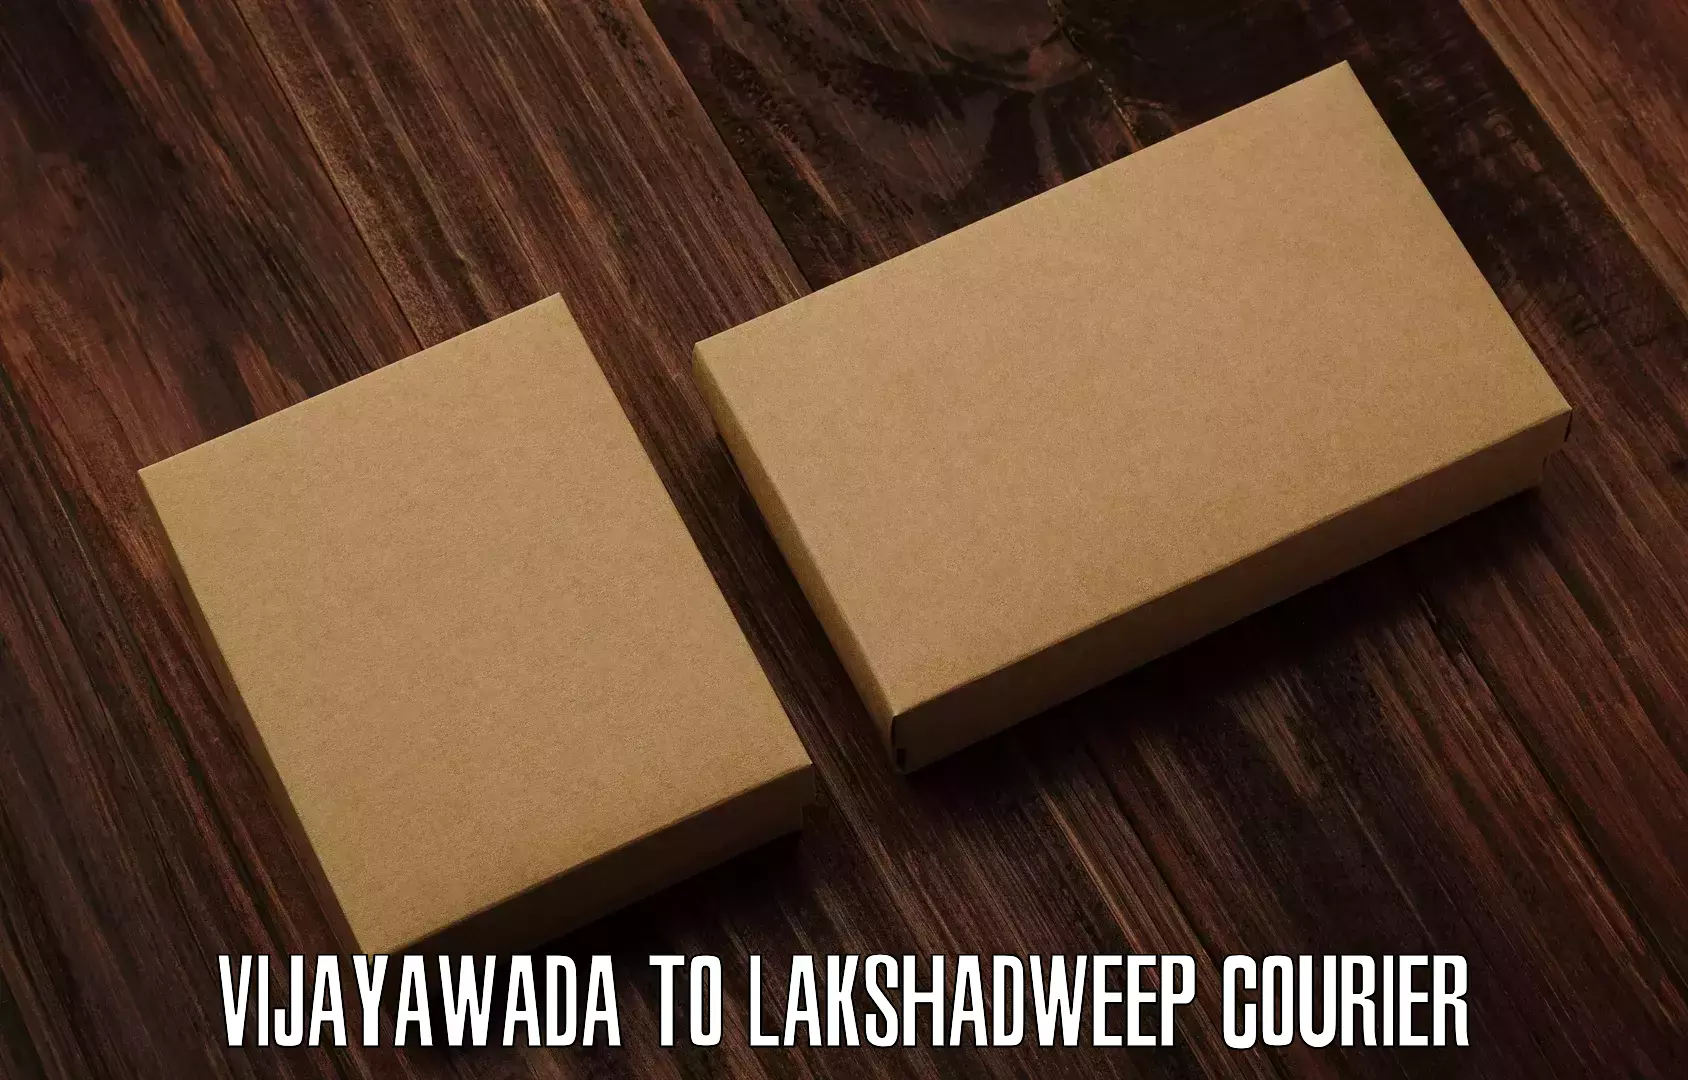 Express logistics service Vijayawada to Lakshadweep